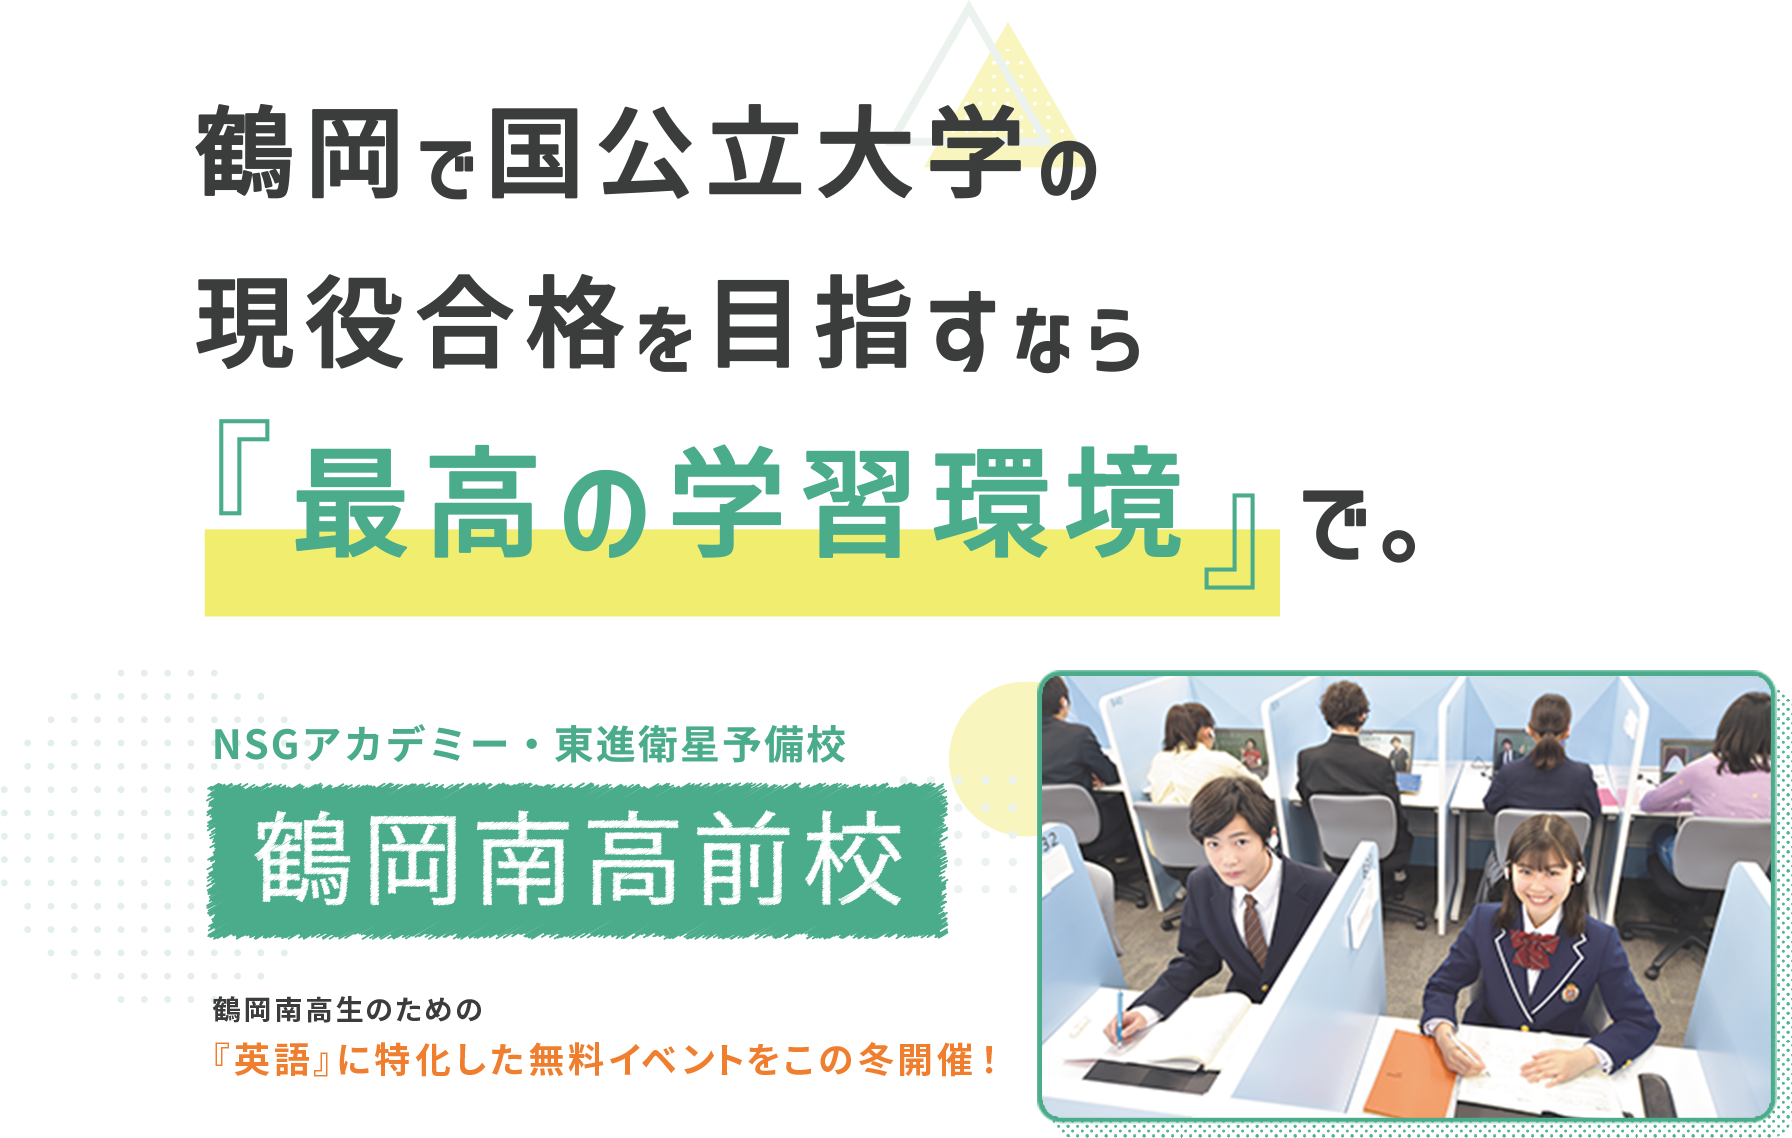 鶴岡で国公立大学の現役合格を目指すなら「最高の学習環境」で。 NSGアカデミー・東進衛星予備校 鶴岡南高前校